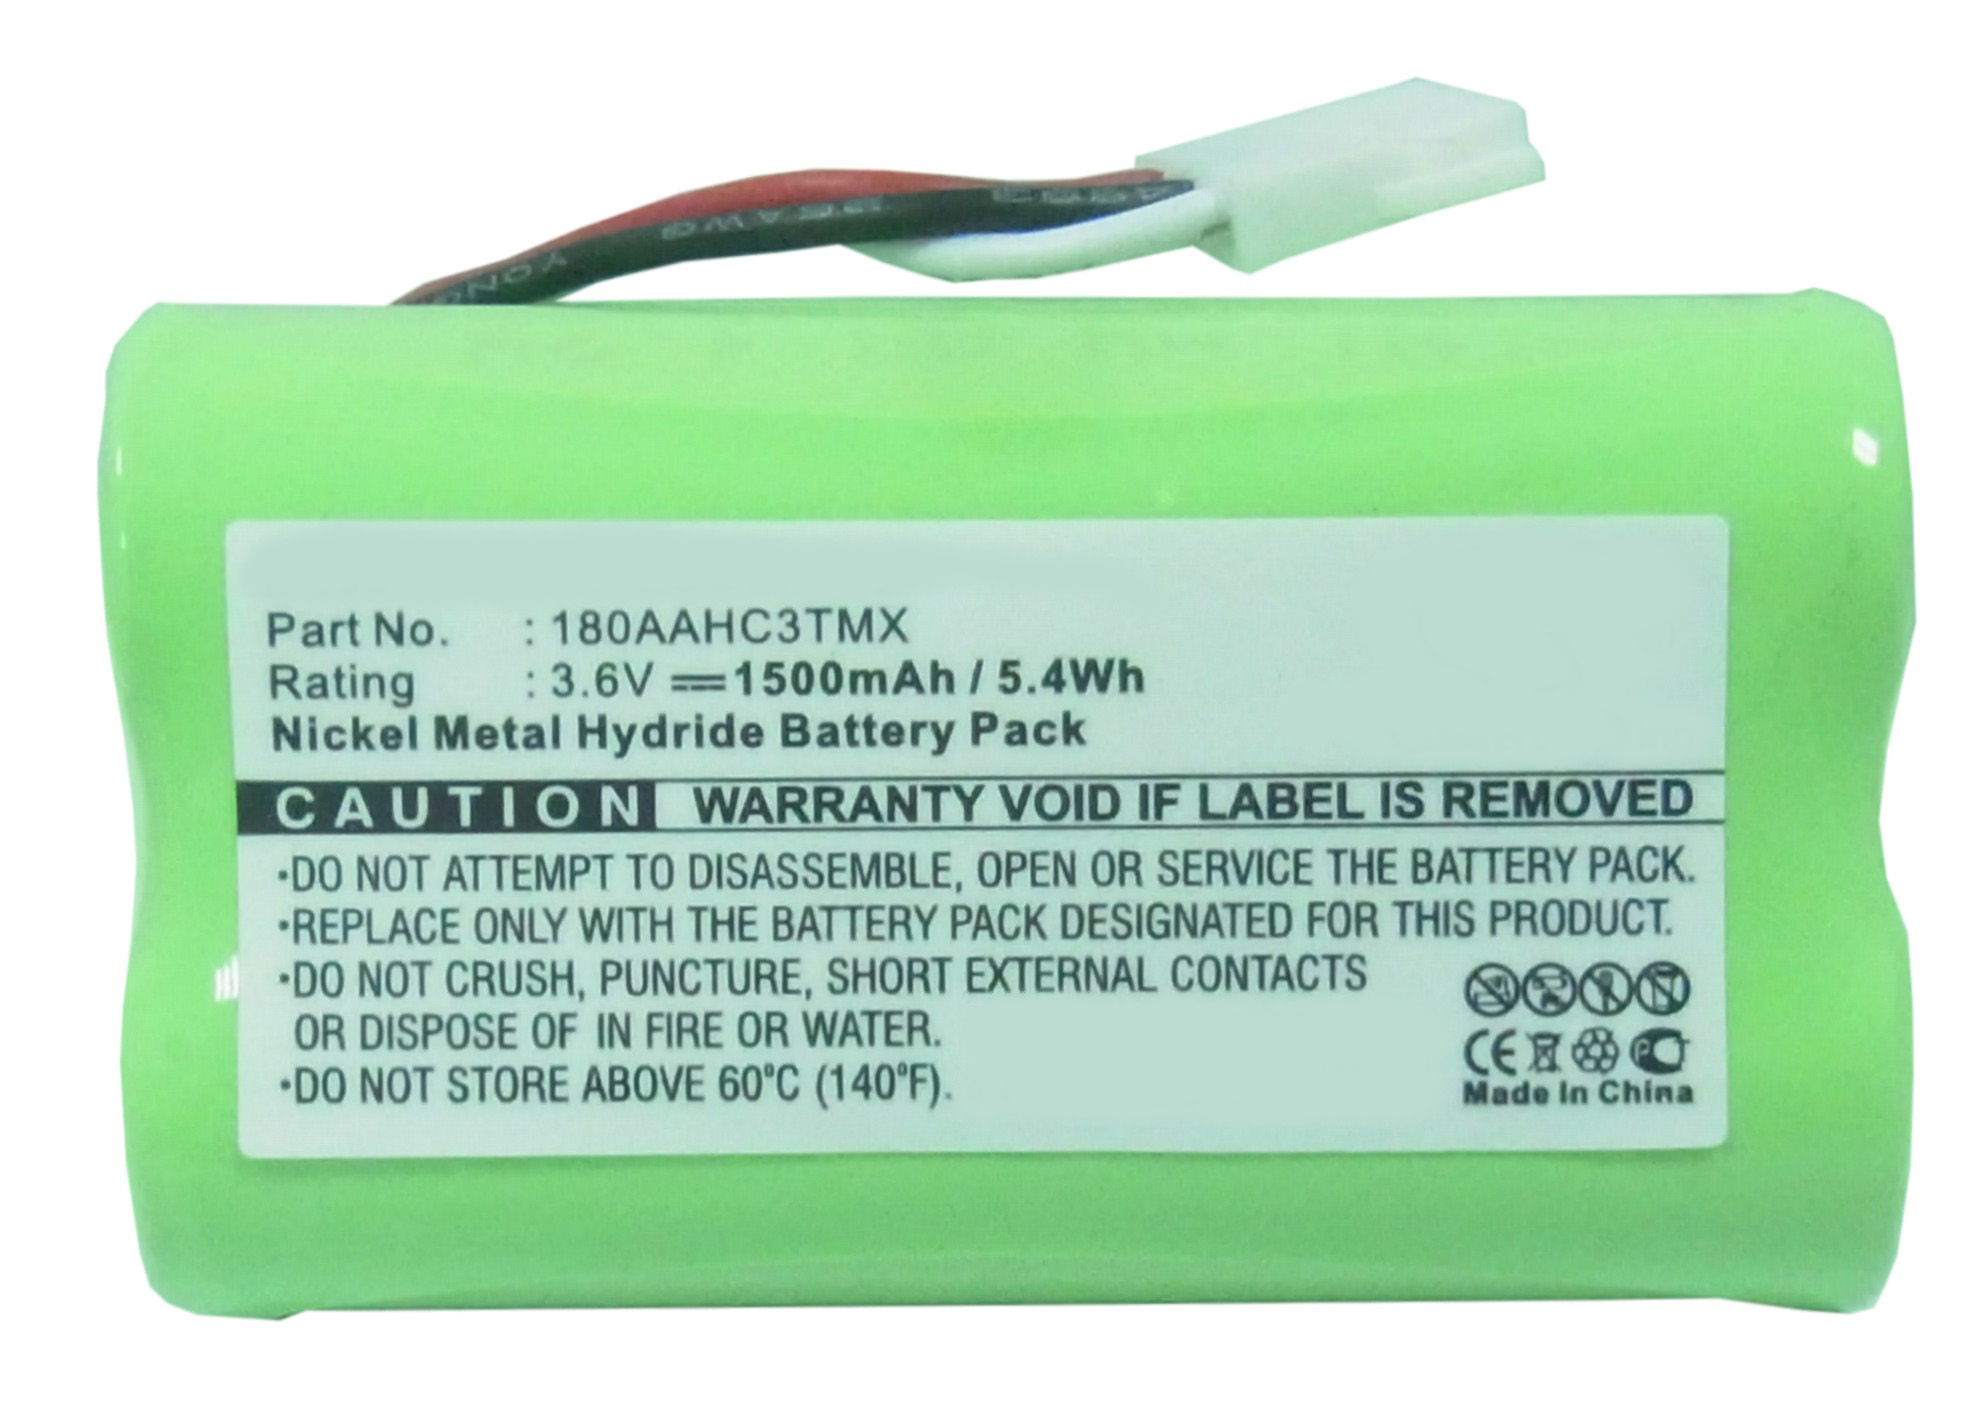 Batteries for LogitechSpeaker